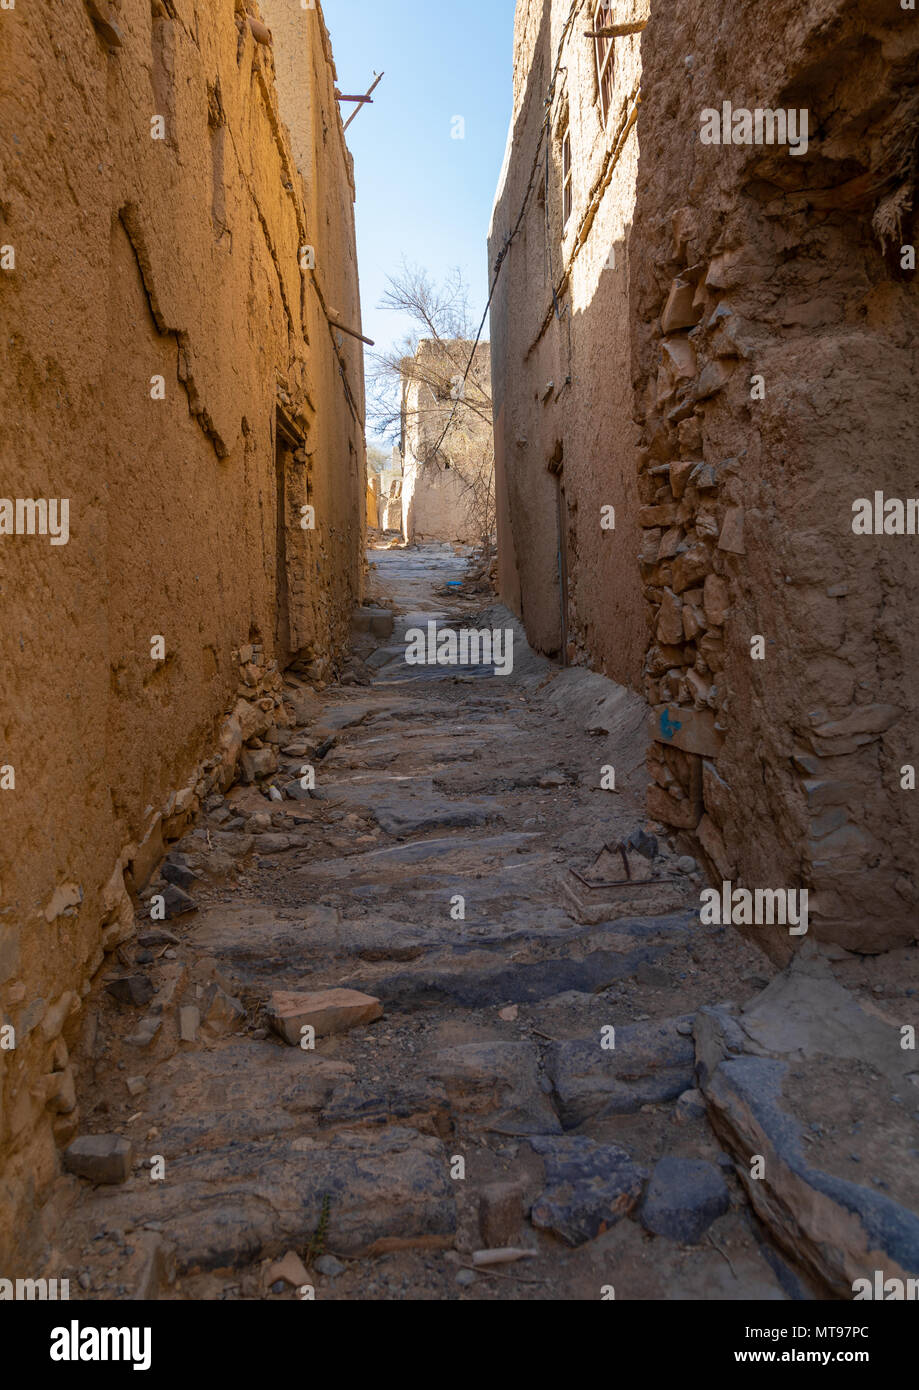 Vecchia casa abbandonata in un villaggio, Ad Dakhiliyah Regione, Al Hamra, Oman Foto Stock